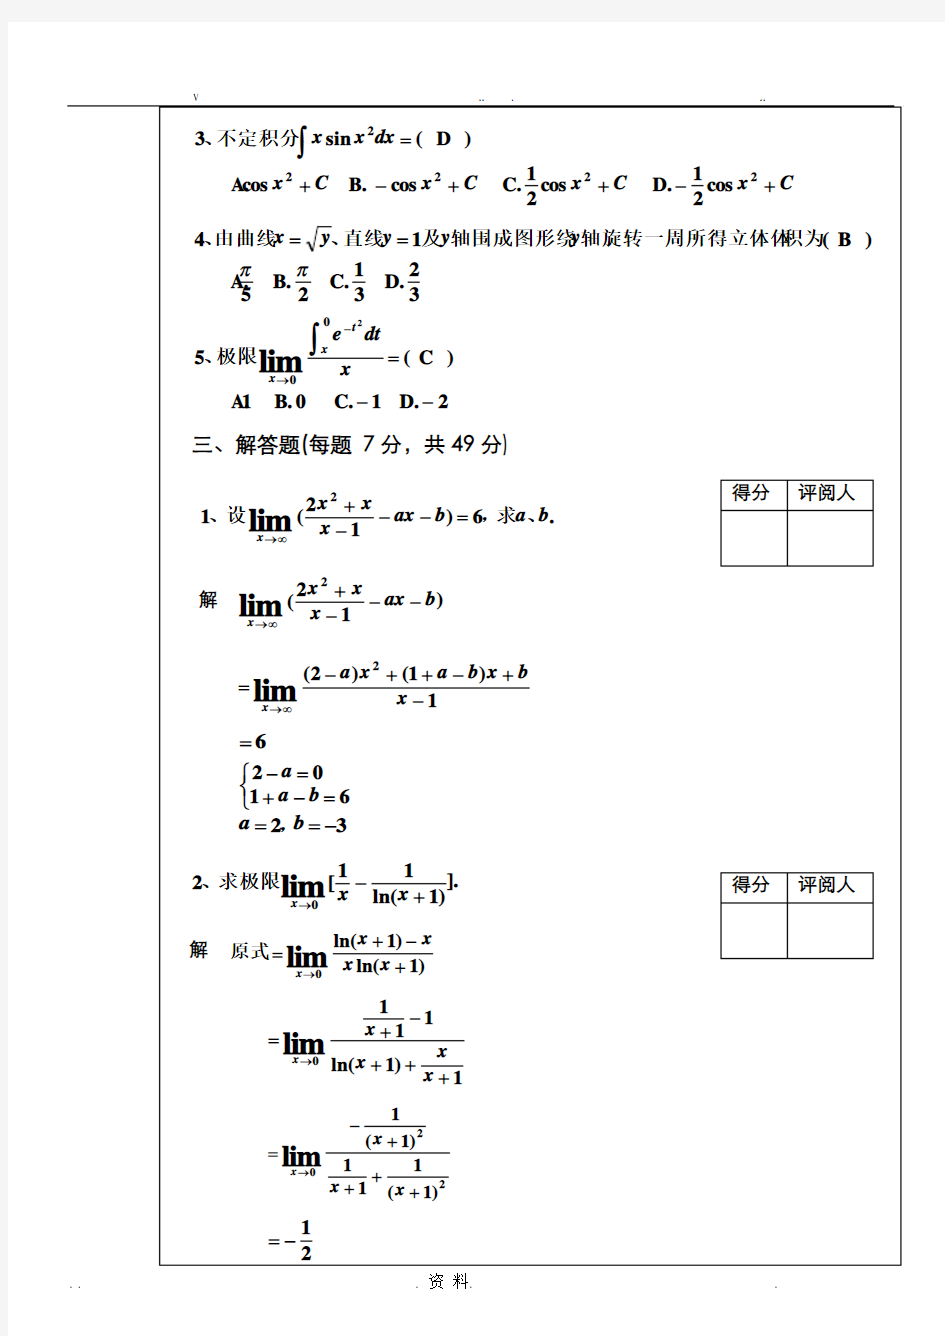 高等数学1(上册)试题答案及复习要点汇总(完整版)